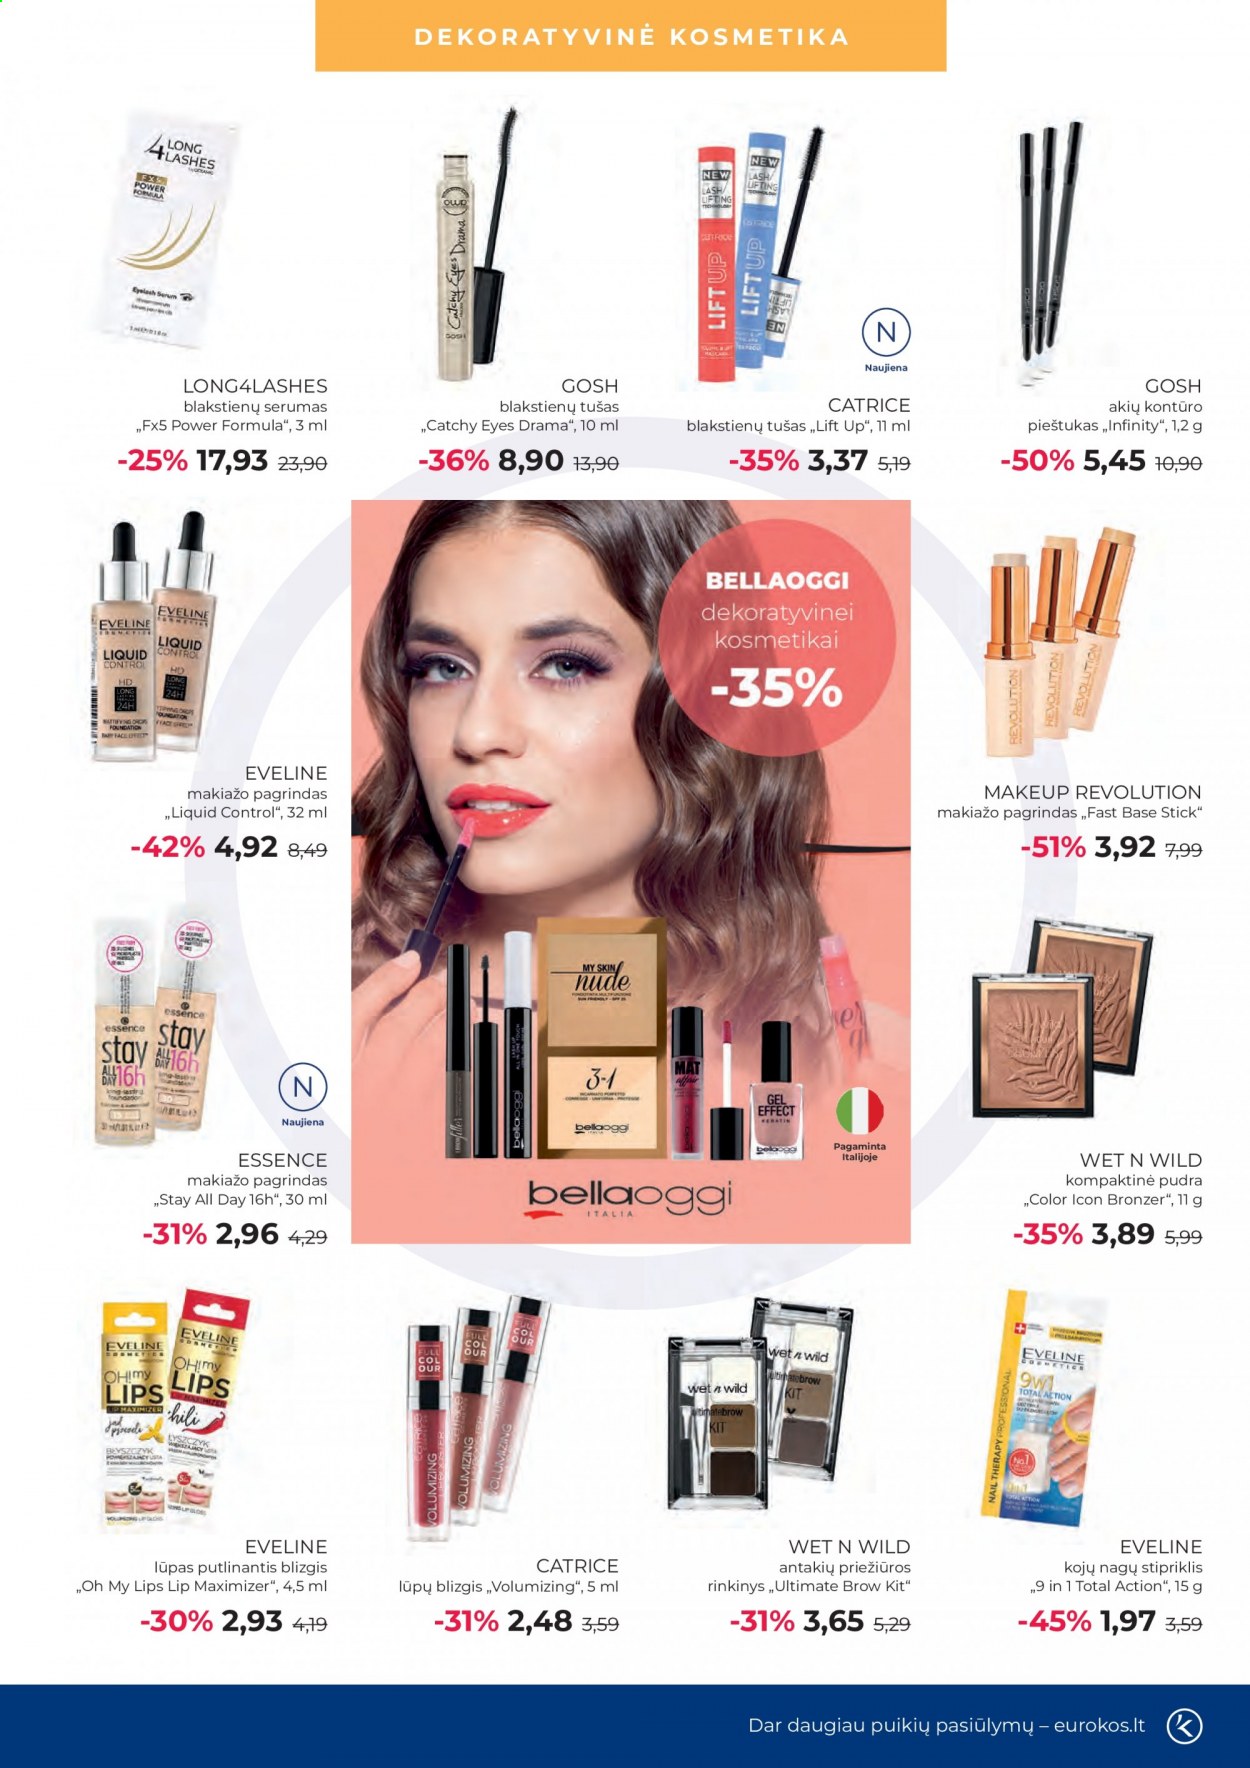 thumbnail - „Eurokos“ leidinys - 2021 08 03 - 2021 08 30 - Išpardavimų produktai - blakstienų tušas, kompaktinė pudra, Long4lashes, lūpų blizgis, Makeup Revolution, makiažo pagrindas. 5 puslapis.